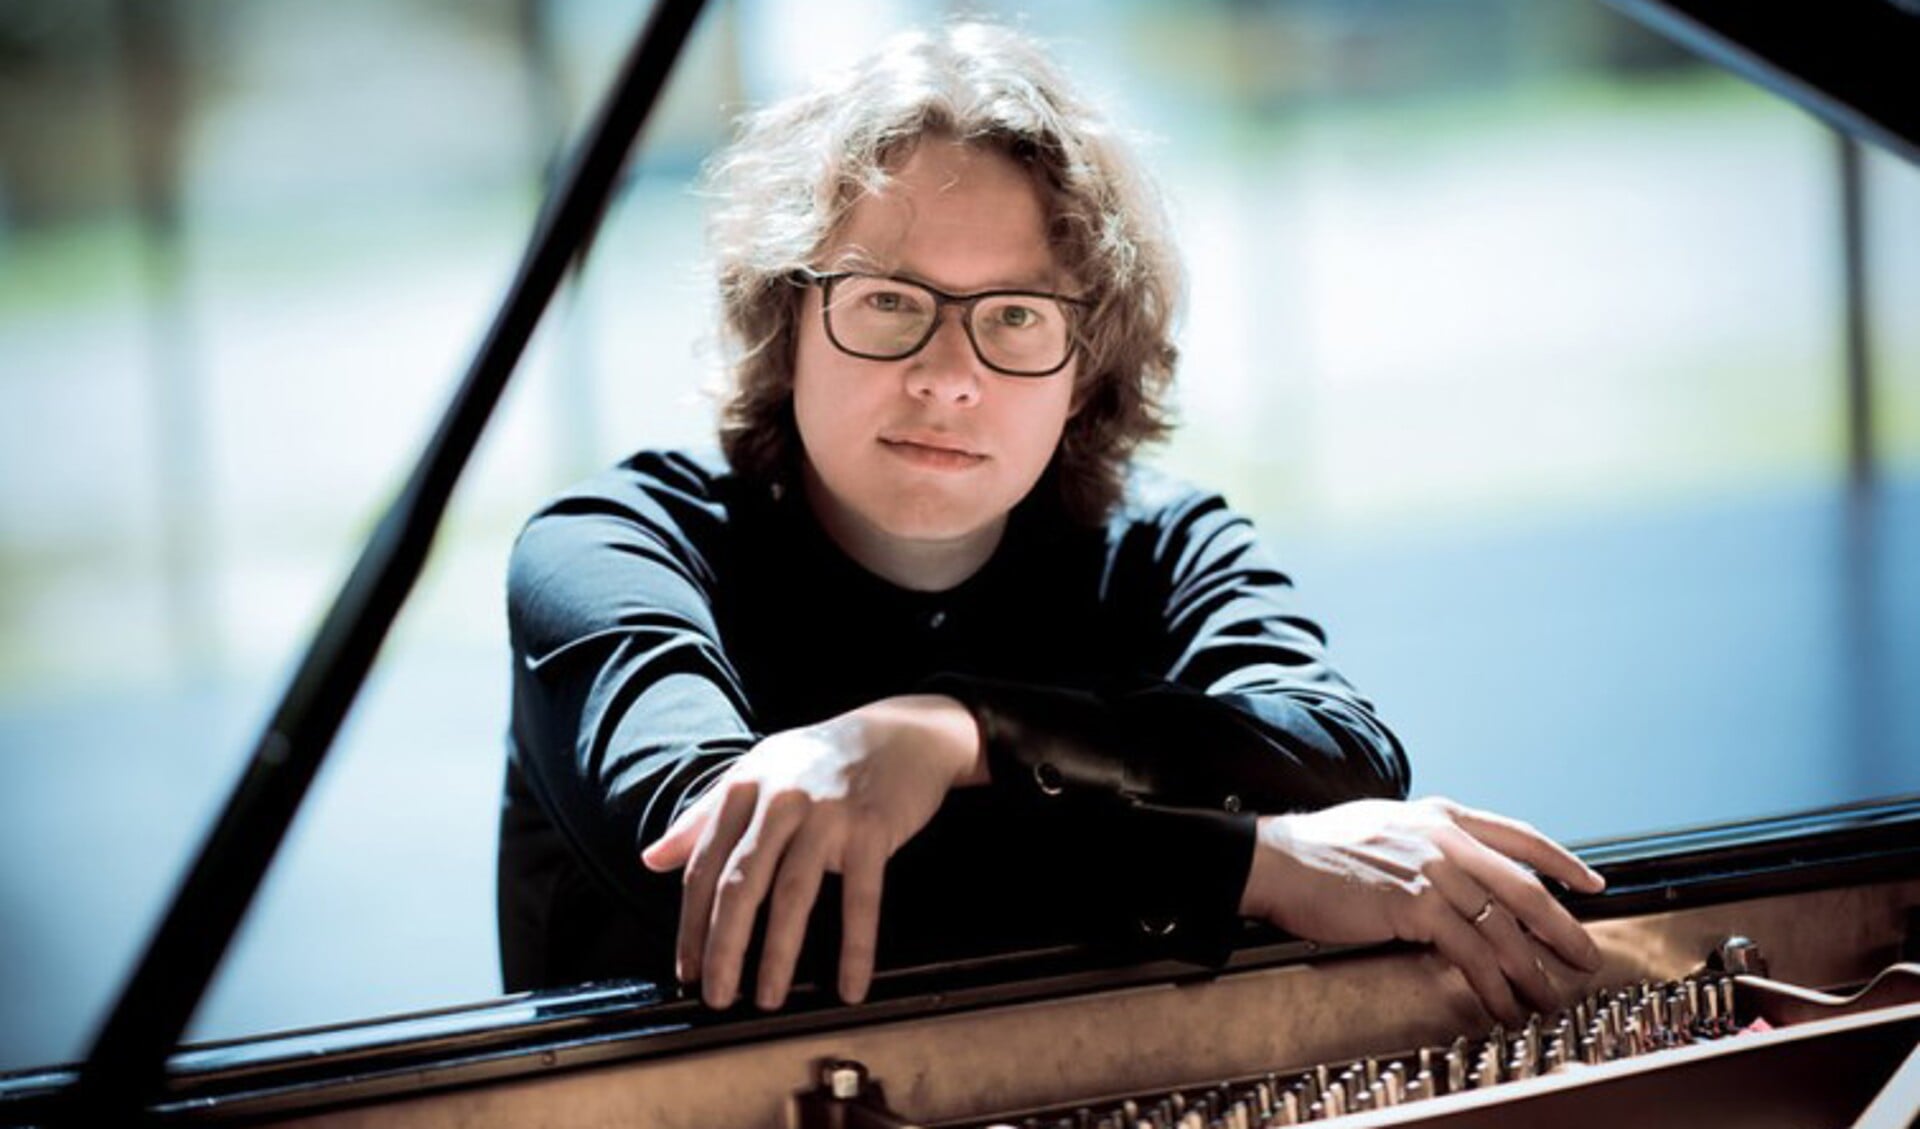 Pianist Hannes Minnaar